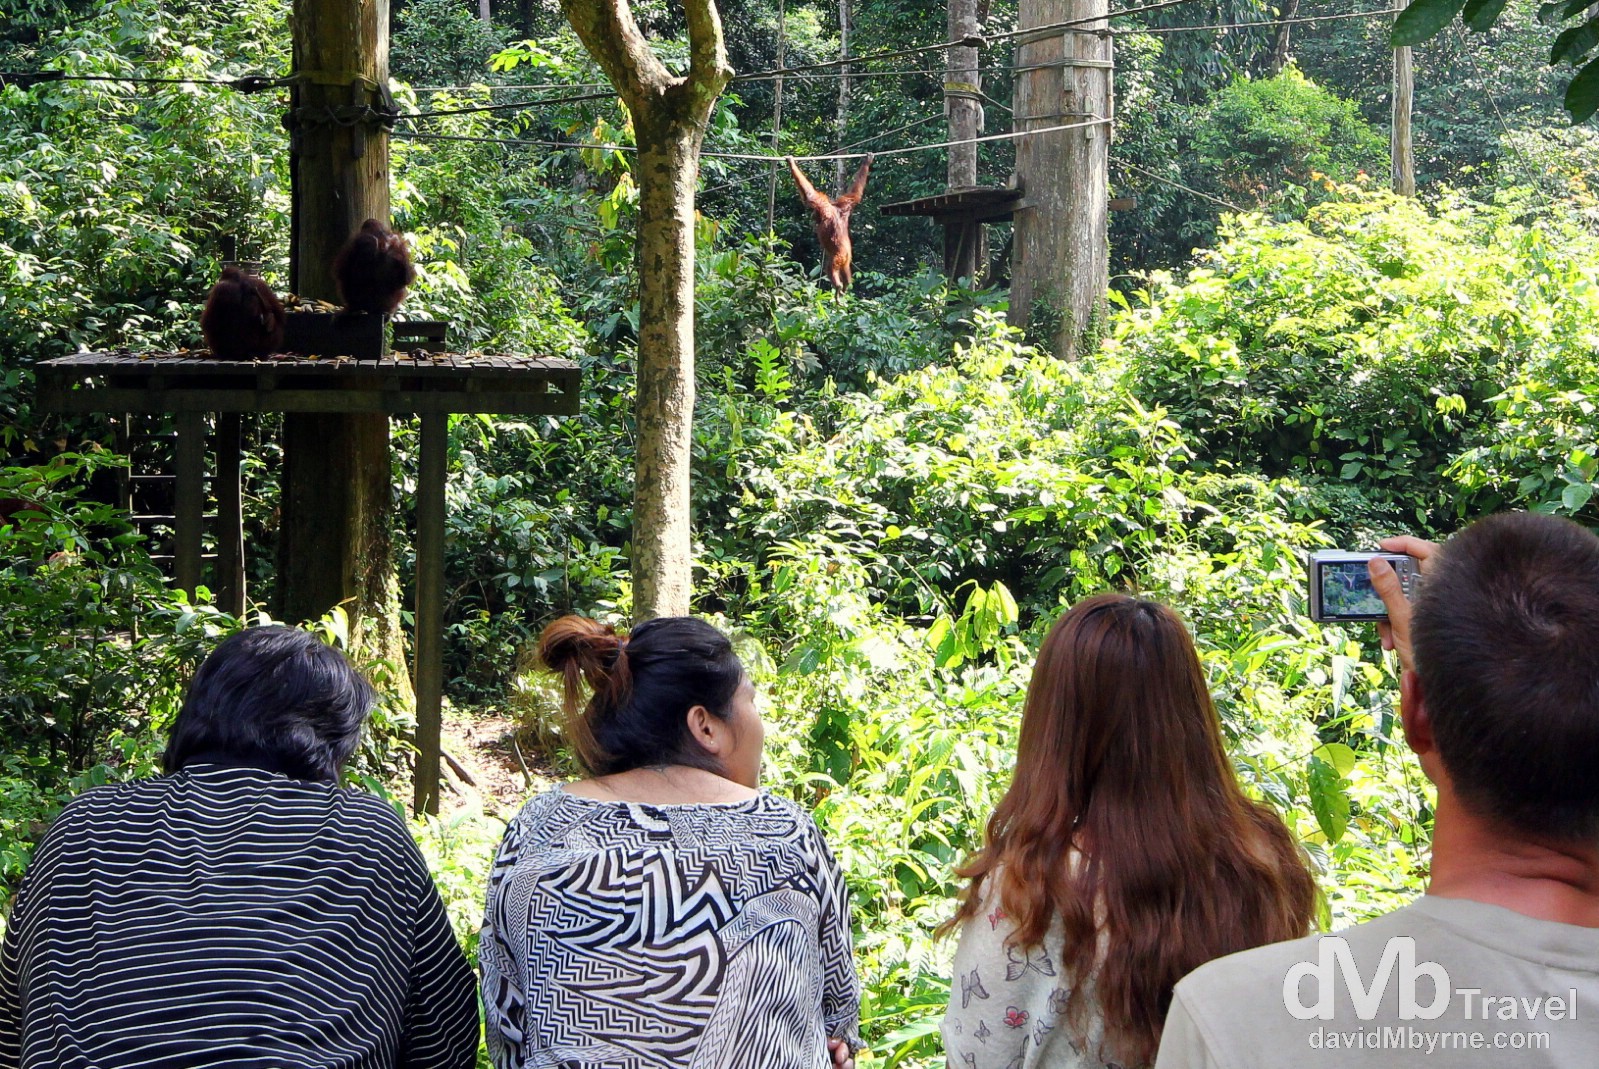 The viewing deck at the Sepilok Orangutan Rehabilitation Centre, Sabah, Malaysian Borneo. June 26th 2012.